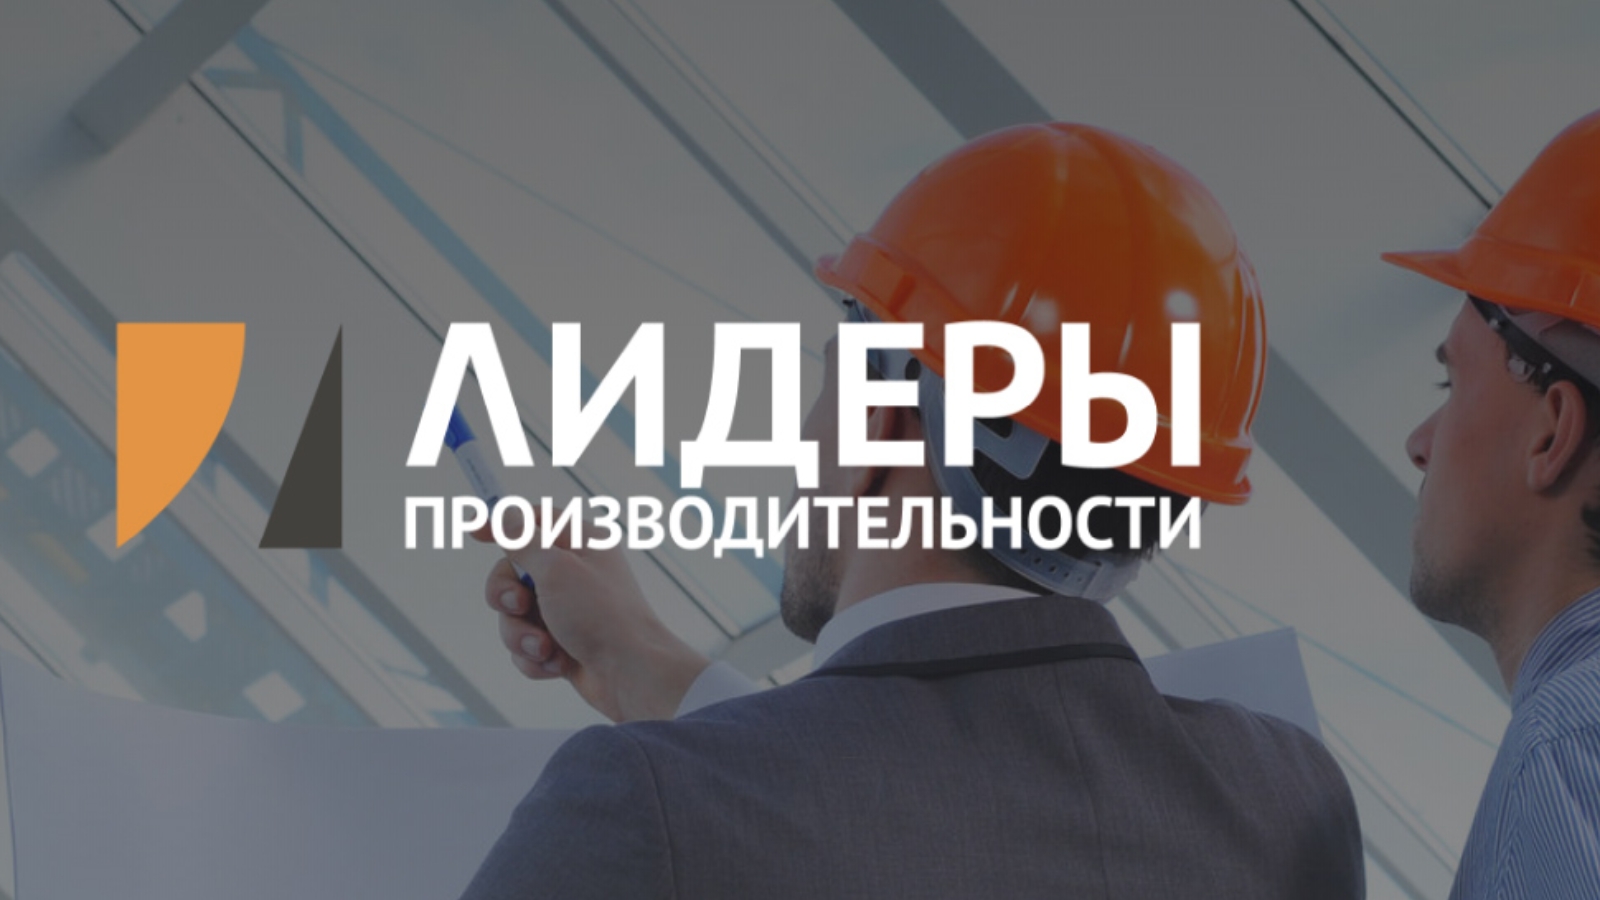 Сотрудники ярославских предприятий прошли обучение по программе «Лидеры производительности»